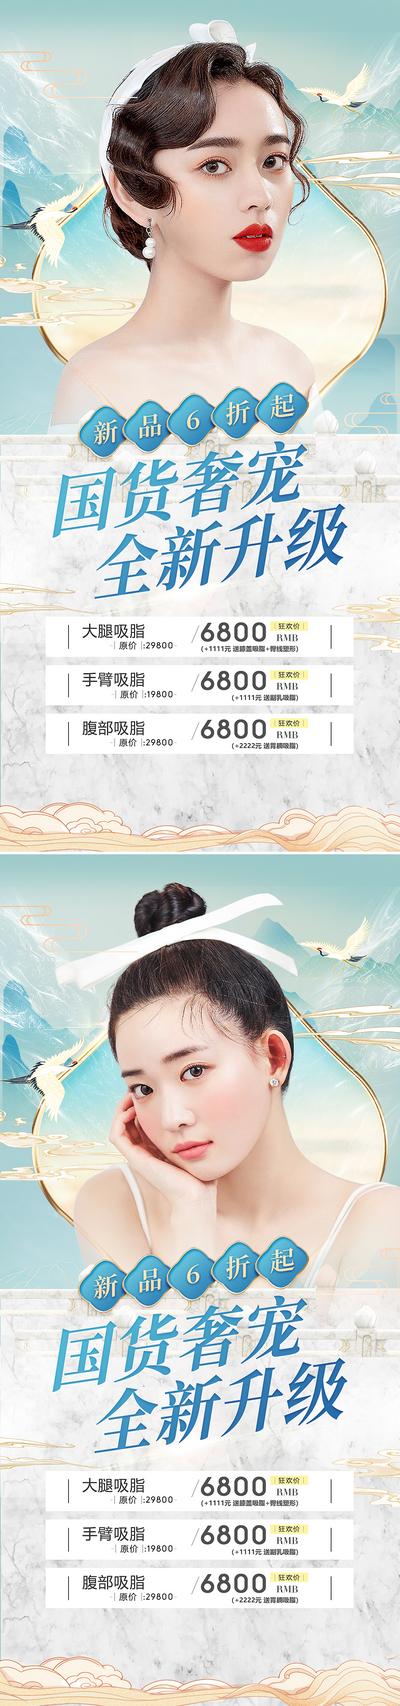 南门网 海报 医美 整形 618 促销 人物 价格表 中国风 国潮 系列